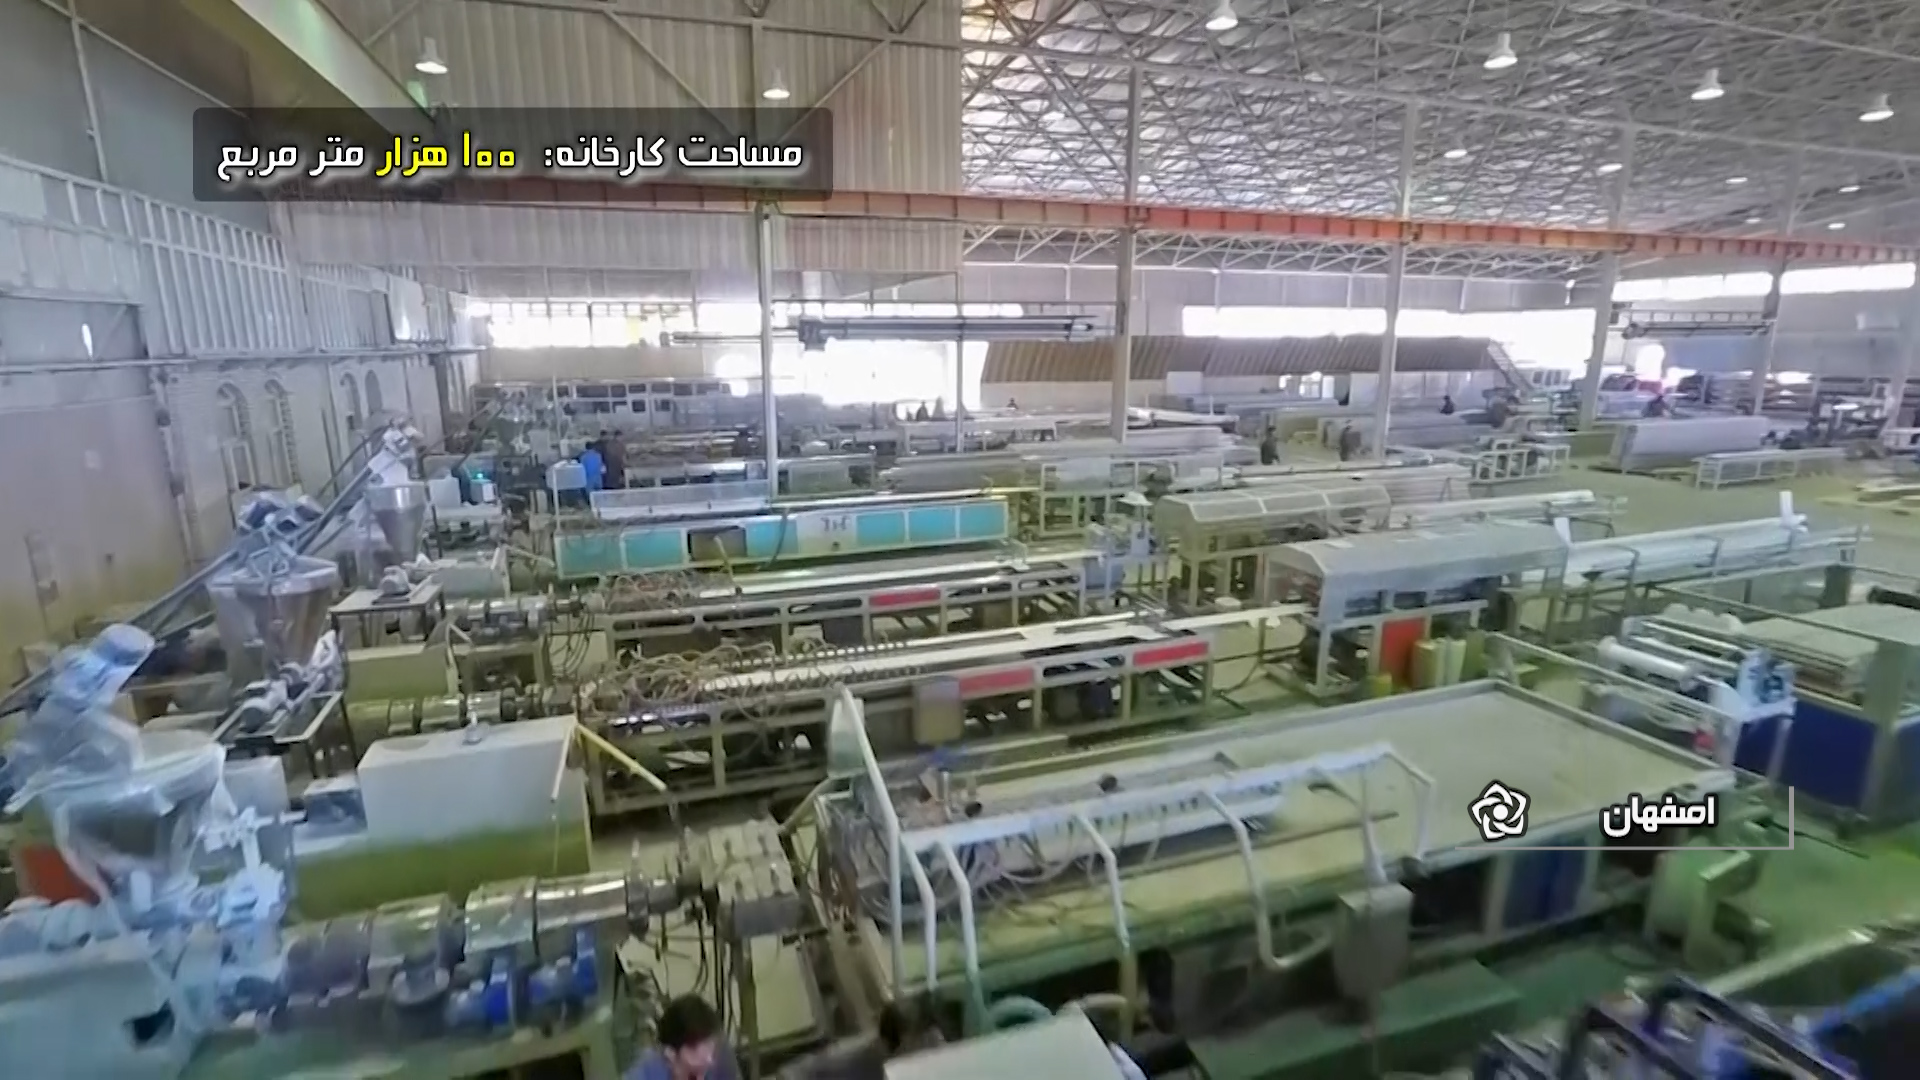 متنوع ترین کارخانه دانش بنیان تولید pvc ایران در نجف آباد+ فیلم و عکس